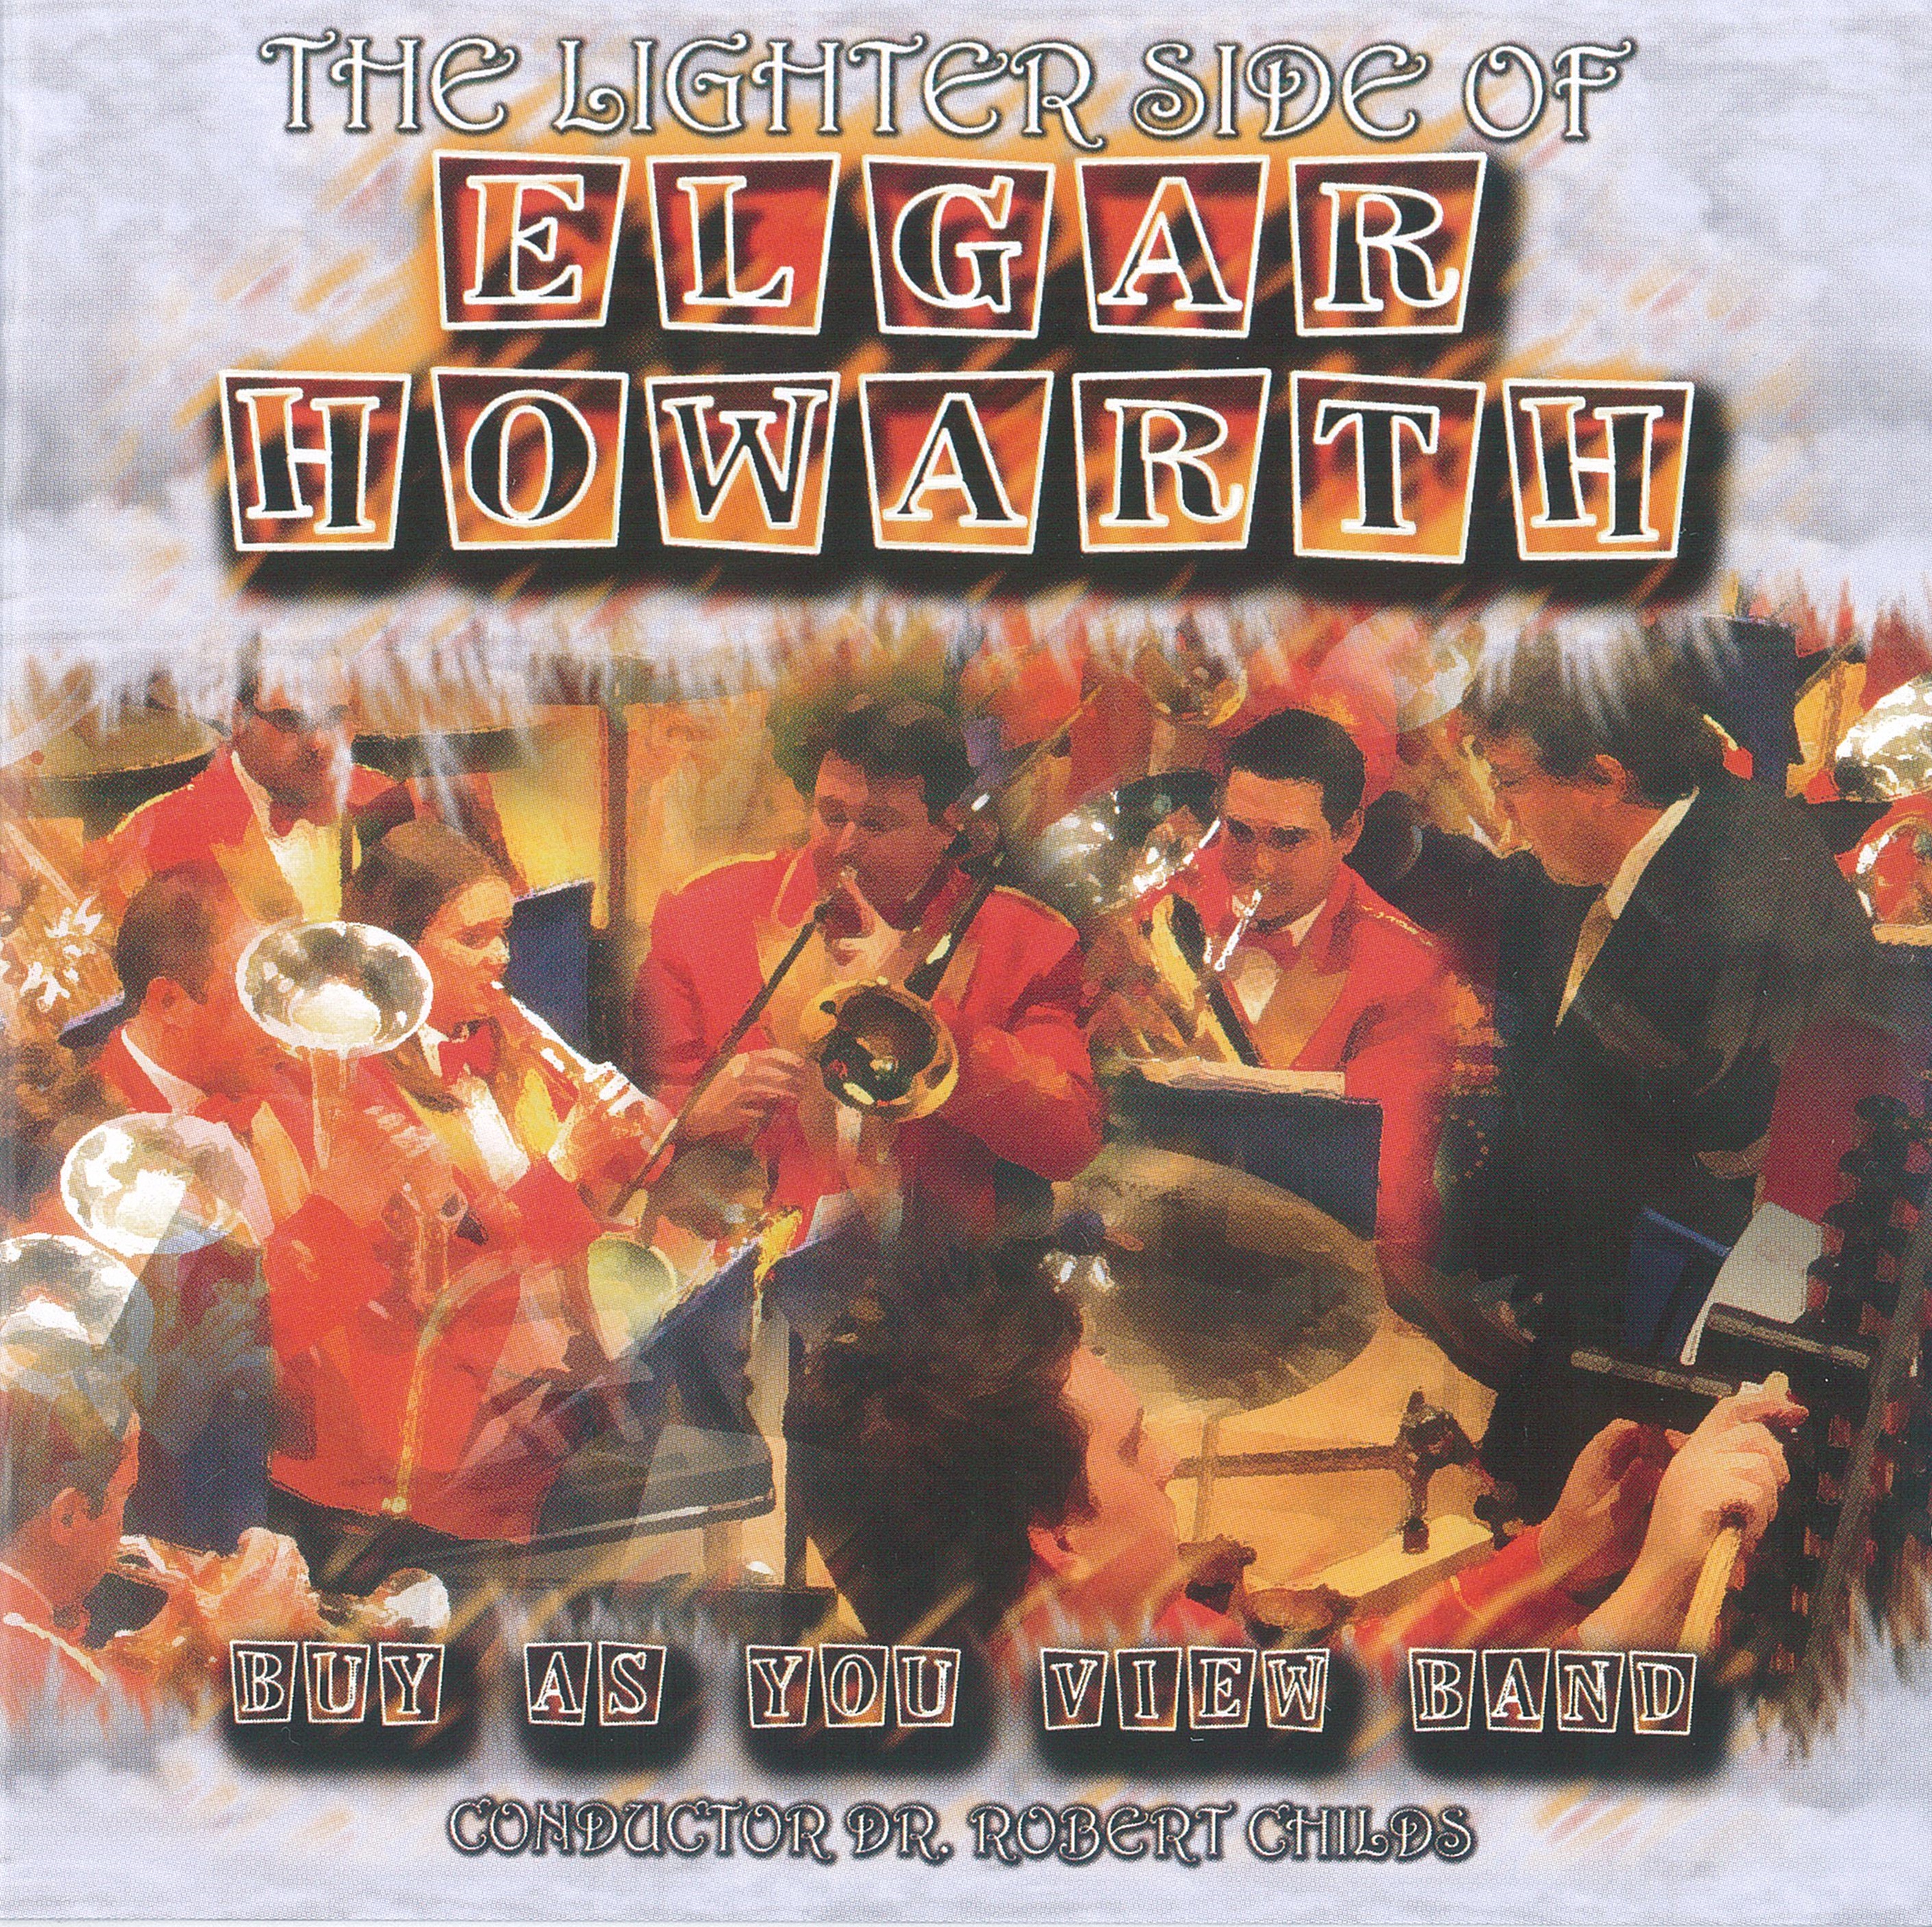 The Lighter Side of Elgar Howarth - CD